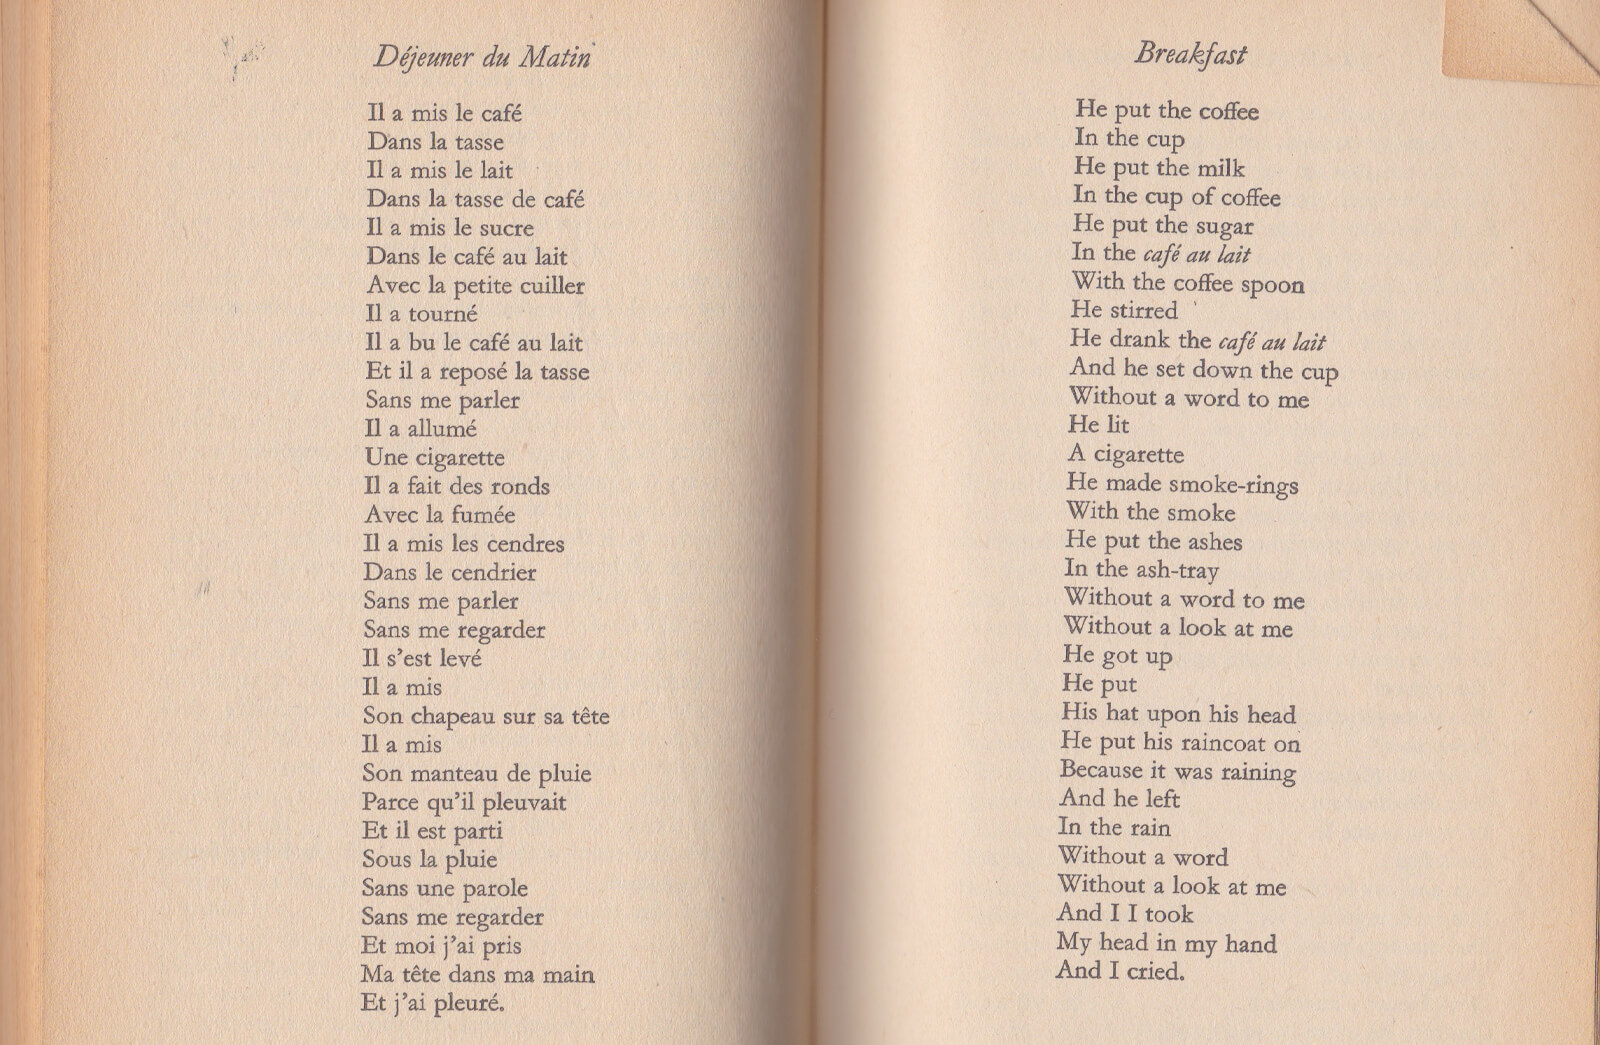 Le Petit Déjeuner, a poem by Jacques Prévert